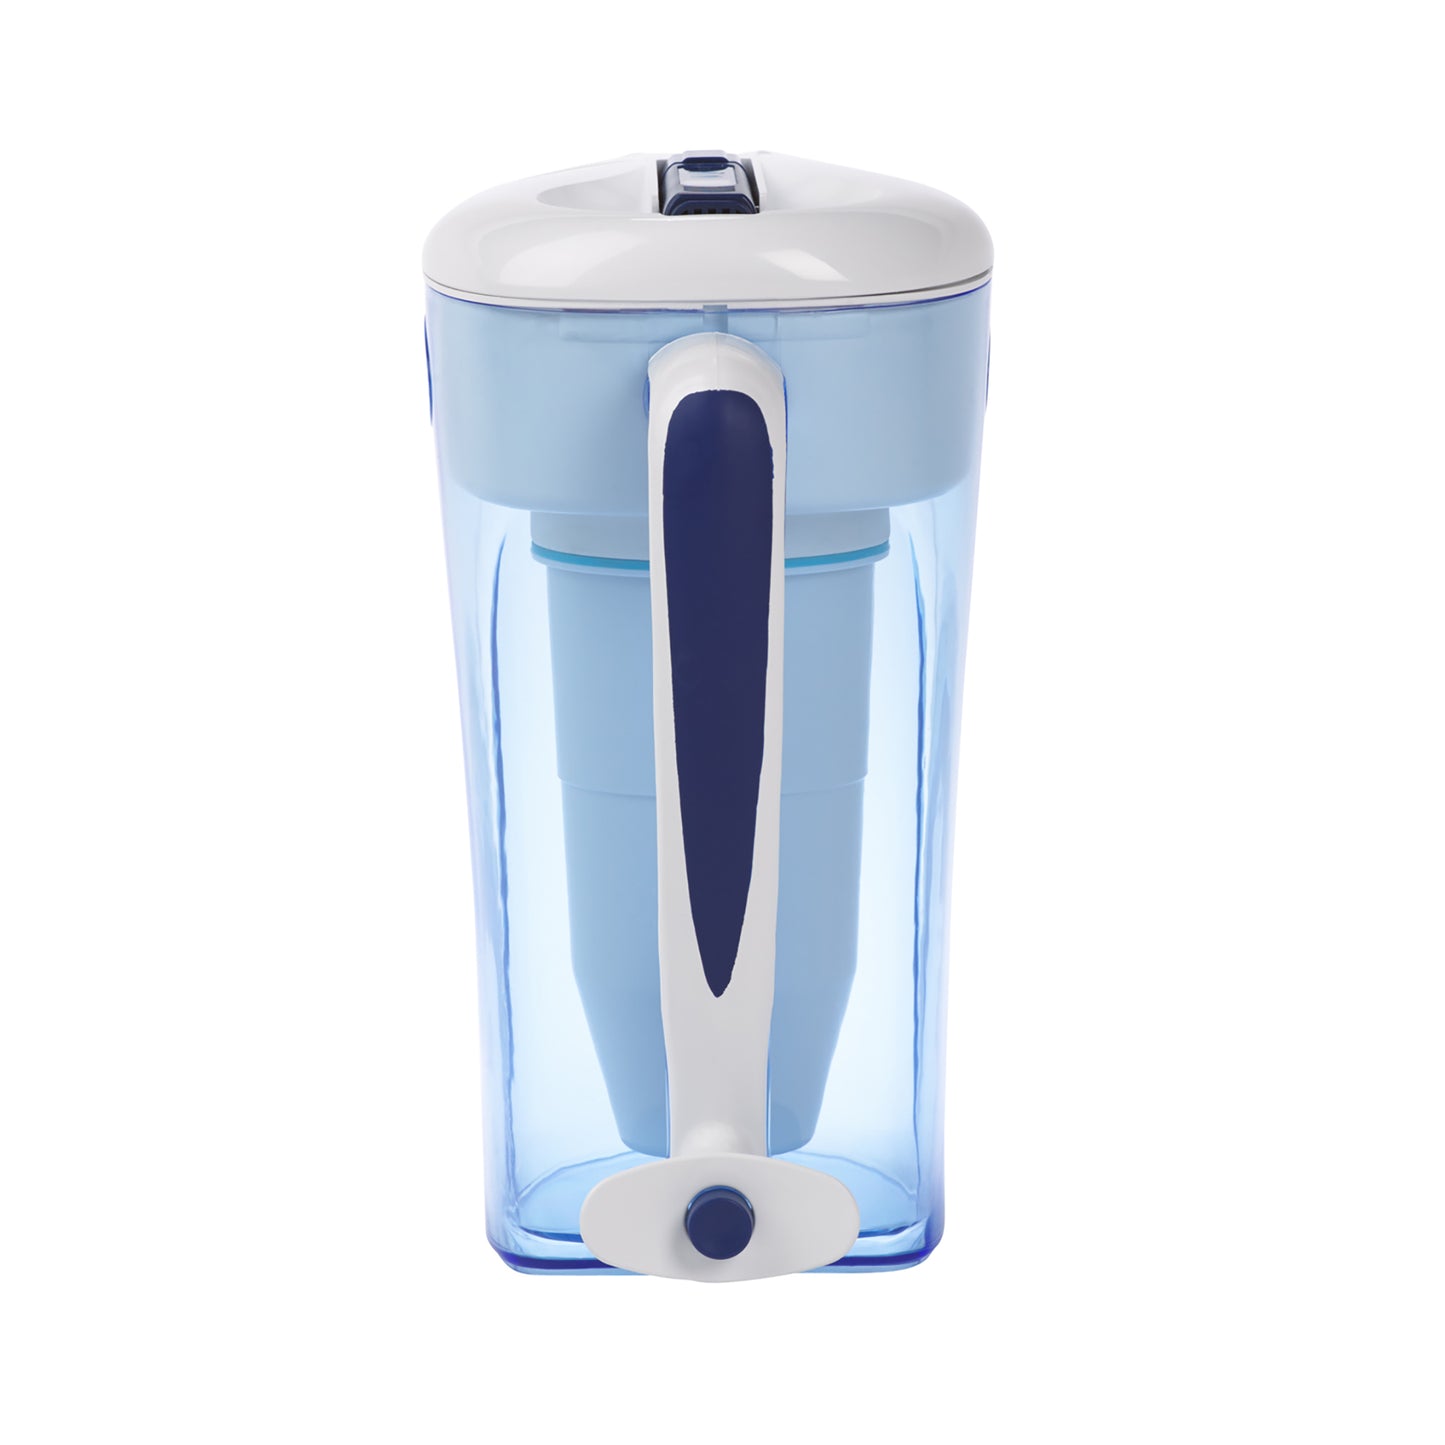 Zestaw Combi: dzbanek o pojemności 2,8 litra z baterią 3 filtry | Dzbanek Combibox na 12 filiżanek (2,8 litra) + 2 filtry